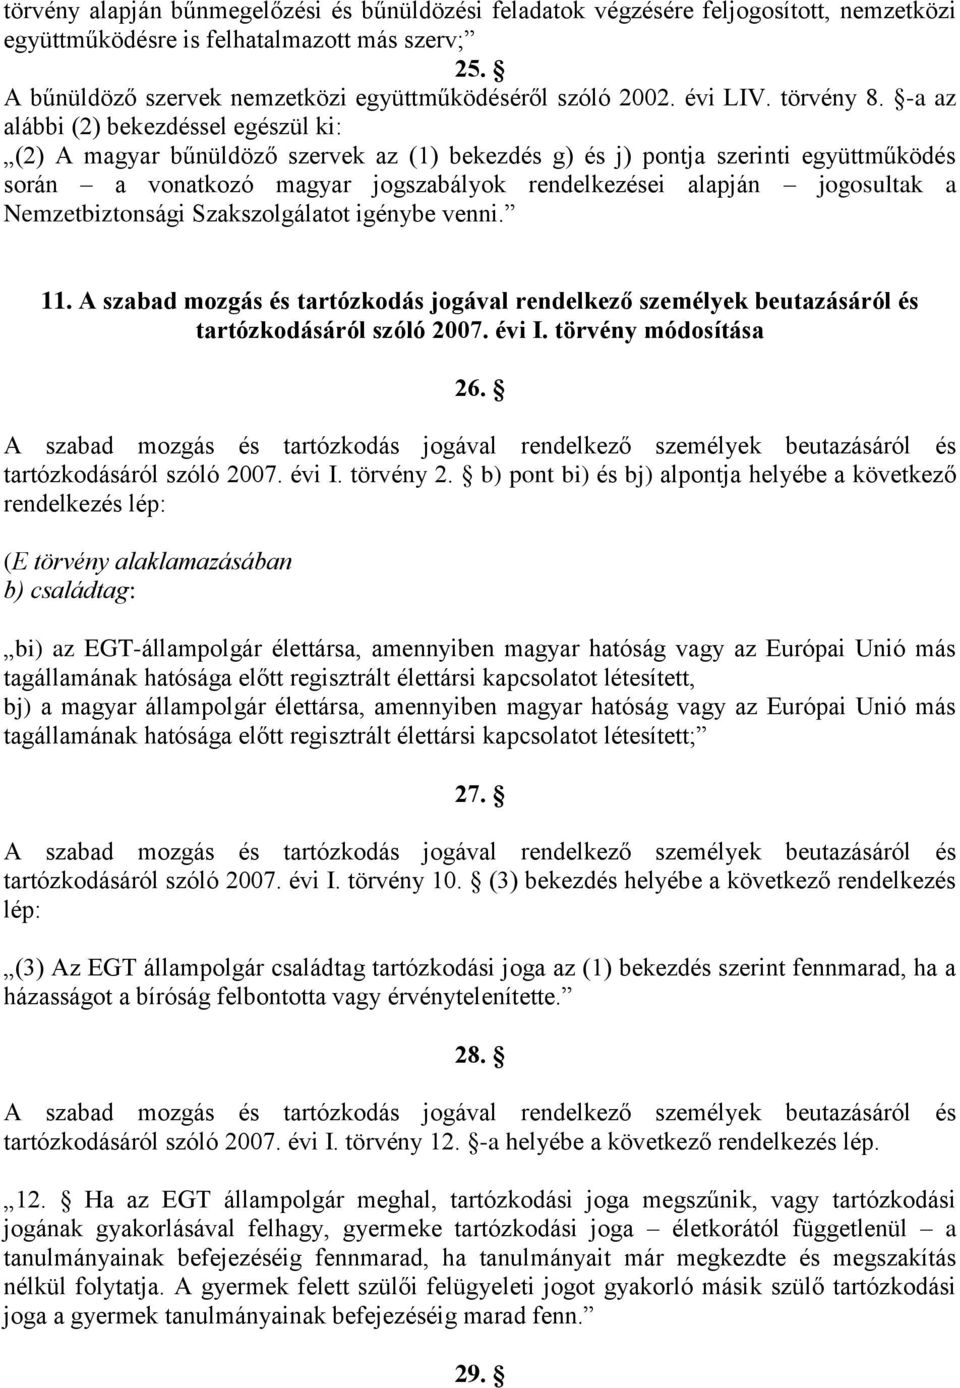 -a az alábbi (2) bekezdéssel egészül ki: (2) A magyar bűnüldöző szervek az (1) bekezdés g) és j) pontja szerinti együttműködés során a vonatkozó magyar jogszabályok rendelkezései alapján jogosultak a